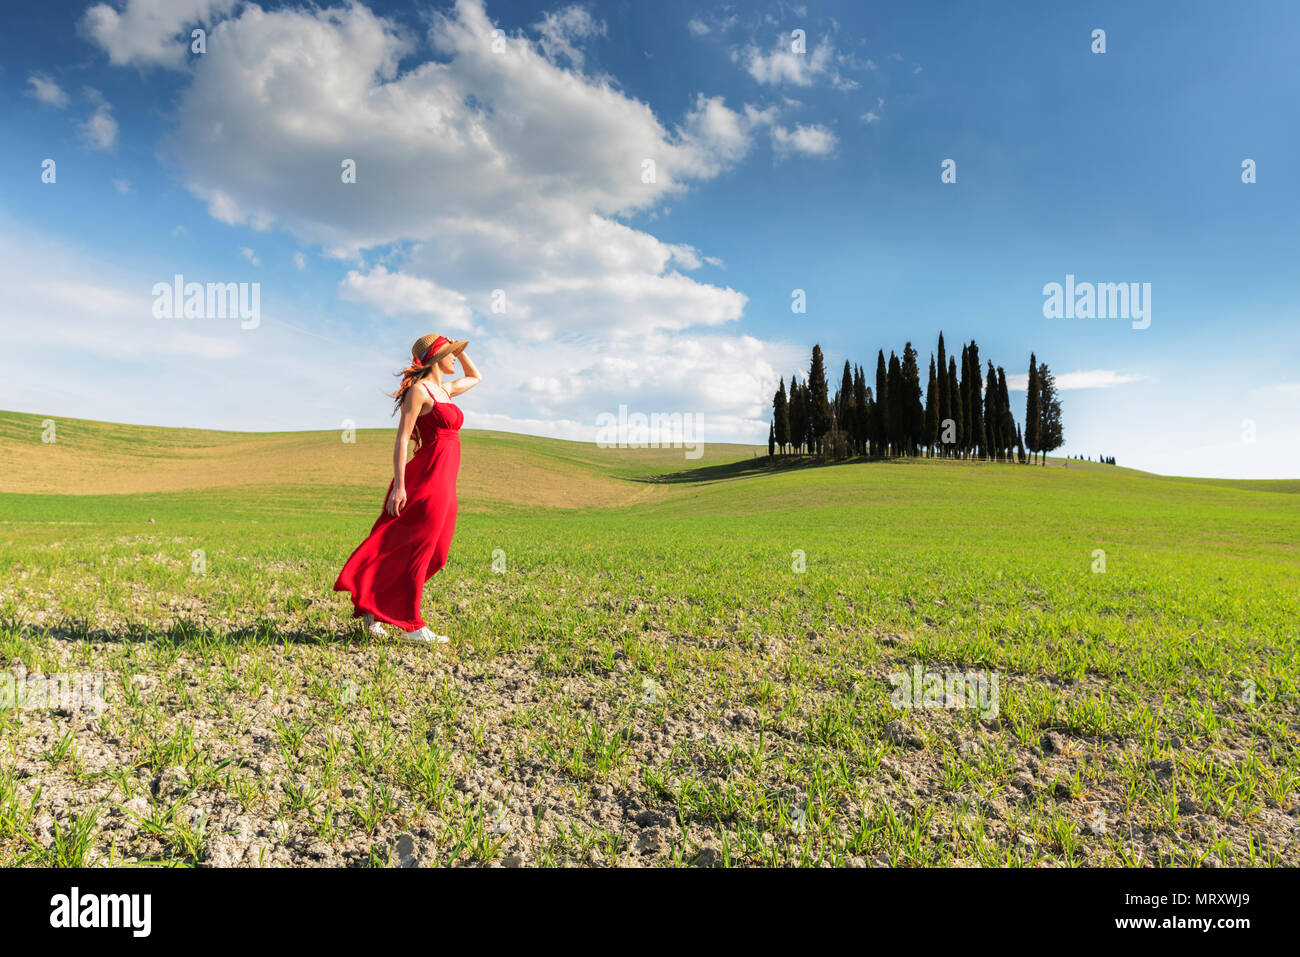 San Quirico d'Orcia, Val d'Orcia, Siena, Toskana, Italien. Eine junge Frau im roten Kleid bewundern Sie die Aussicht in einem Weizenfeld in der Nähe der Zypressen des Orcia va Stockfoto